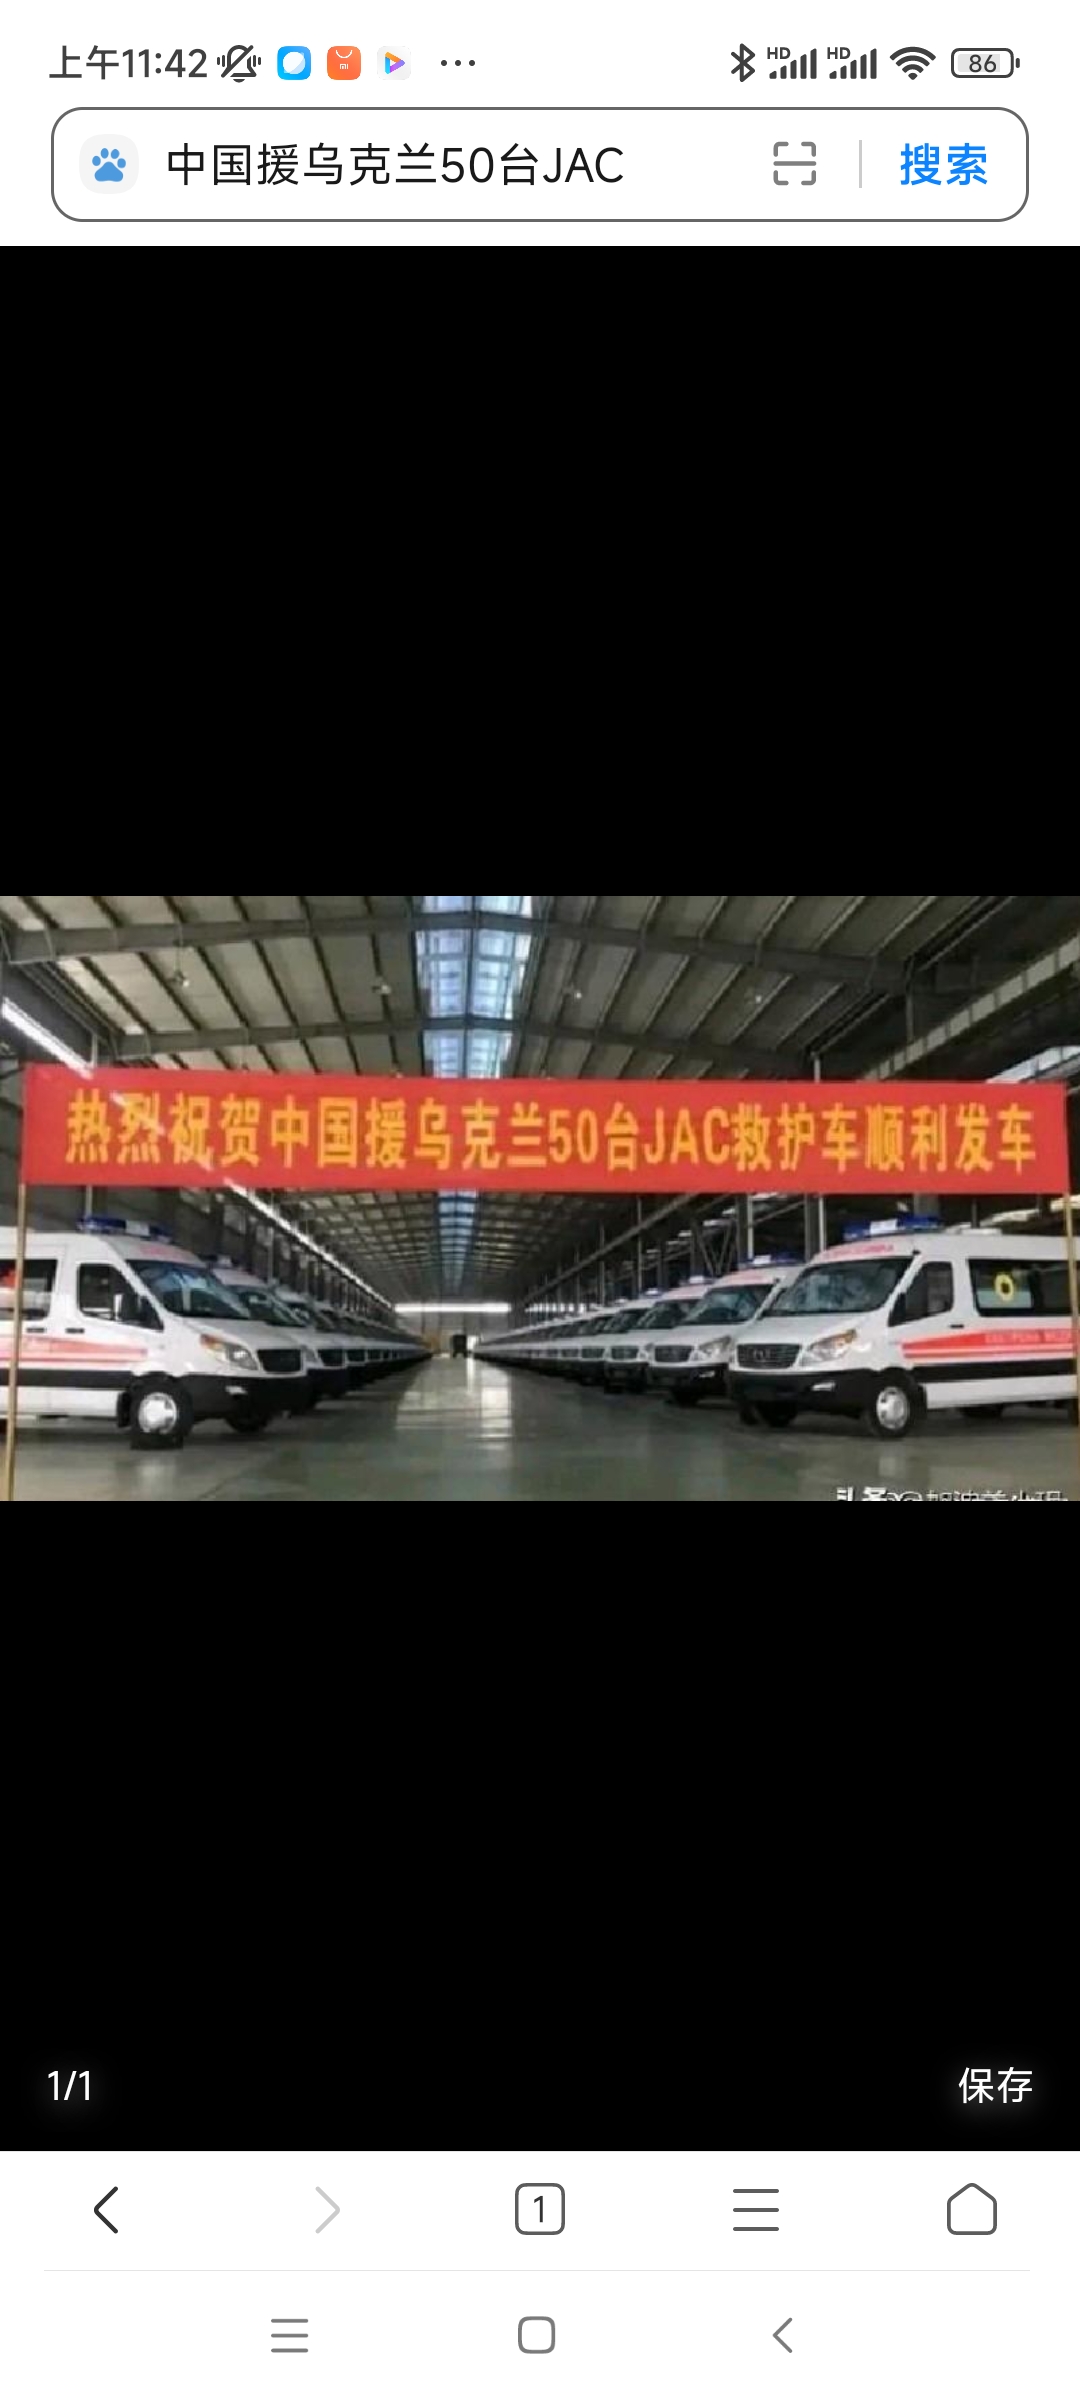 中国援助乌克兰400万欧元的车辆，这次援助是由中国红十字提供的，援助了50辆JA